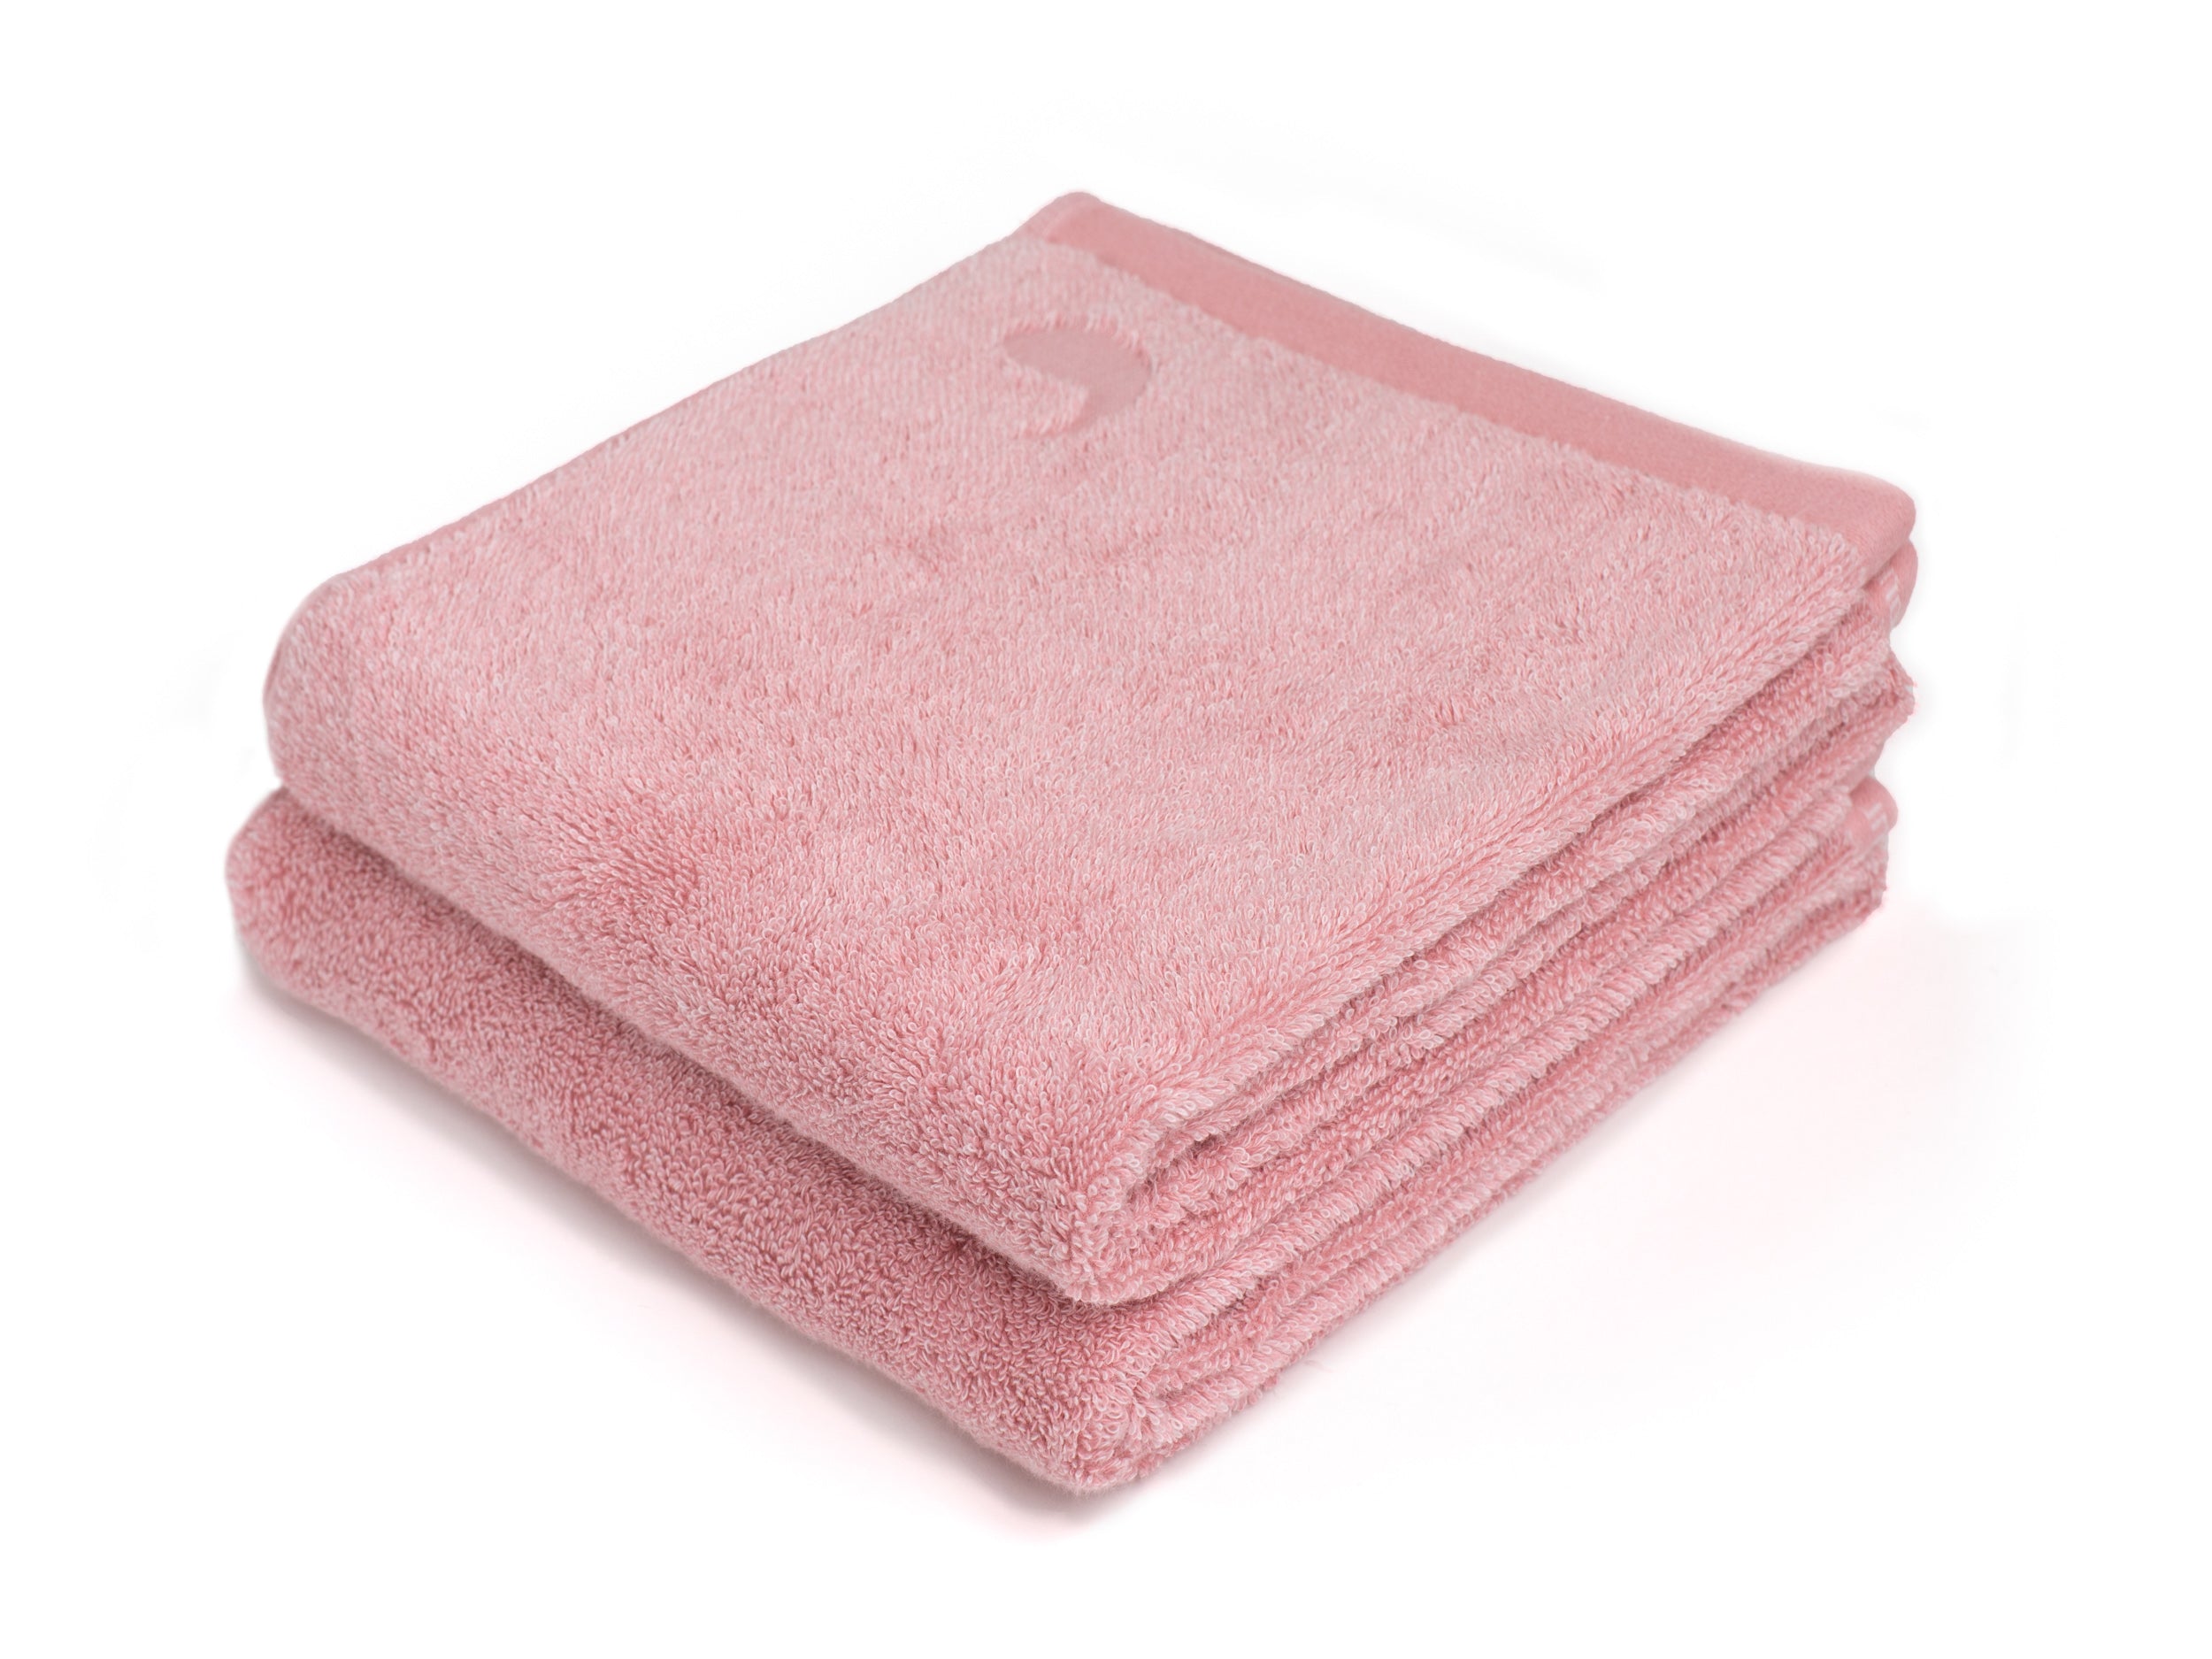 Apt Meerdere moeilijk tevreden te krijgen Namal Uyana roze handdoek (set van twee)- Four Leaves